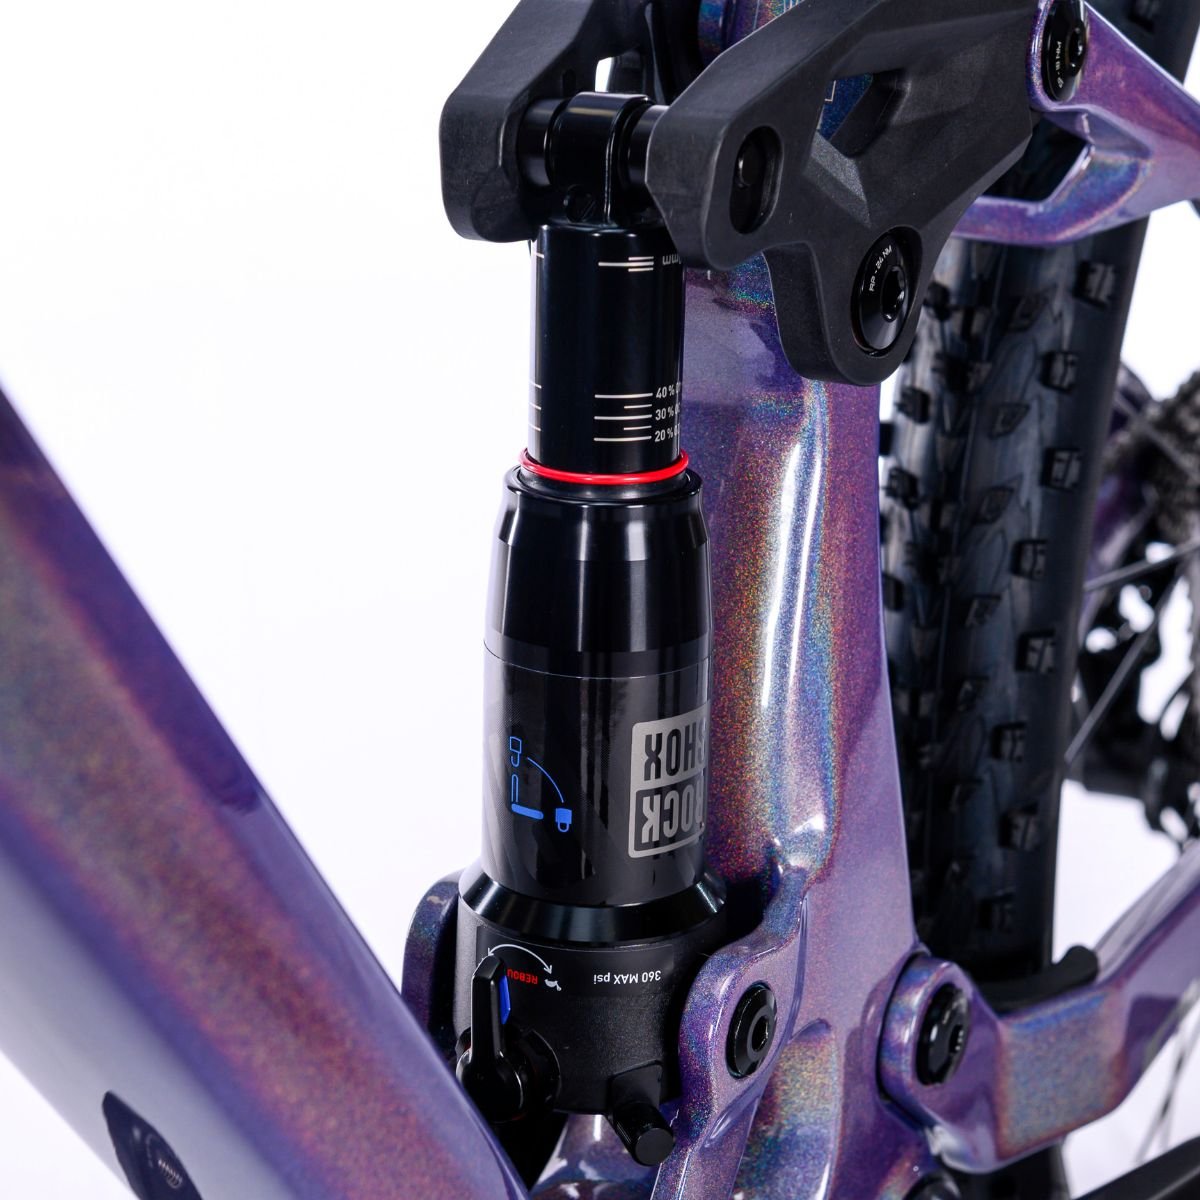 Bicicleta Full Sense Invictus Sport Carbono Shimano Cues:roxo+preto/15 - 7